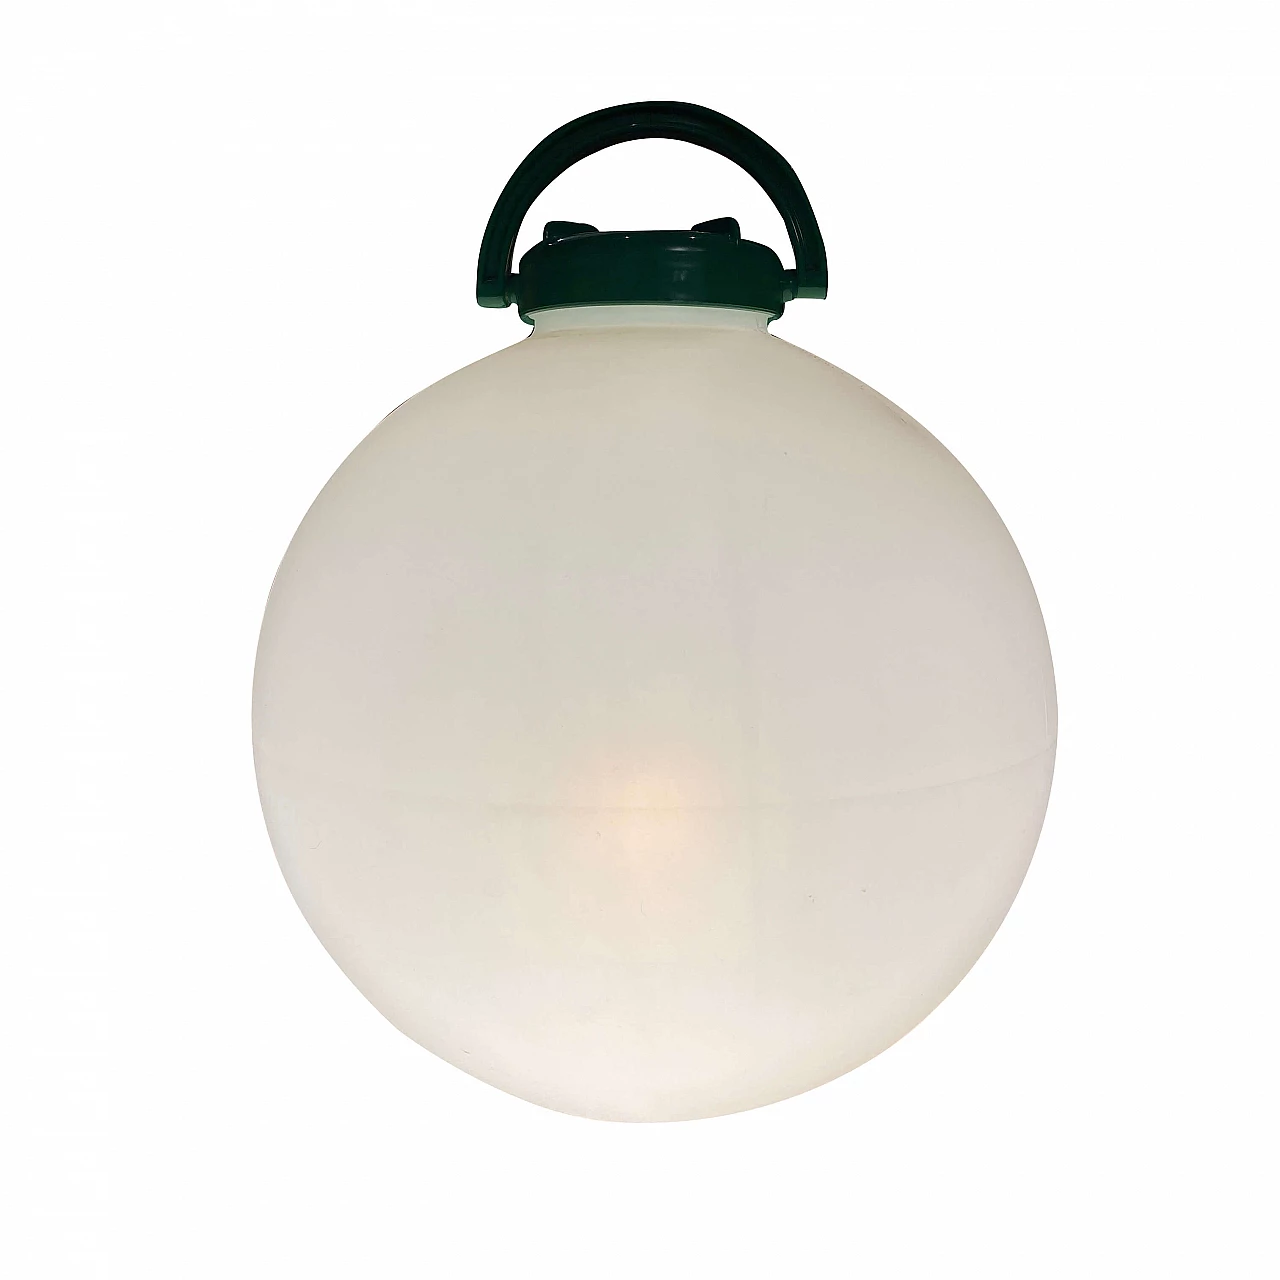 Tama lamp by Isao Hosoe for Valenti, 80's 1158644